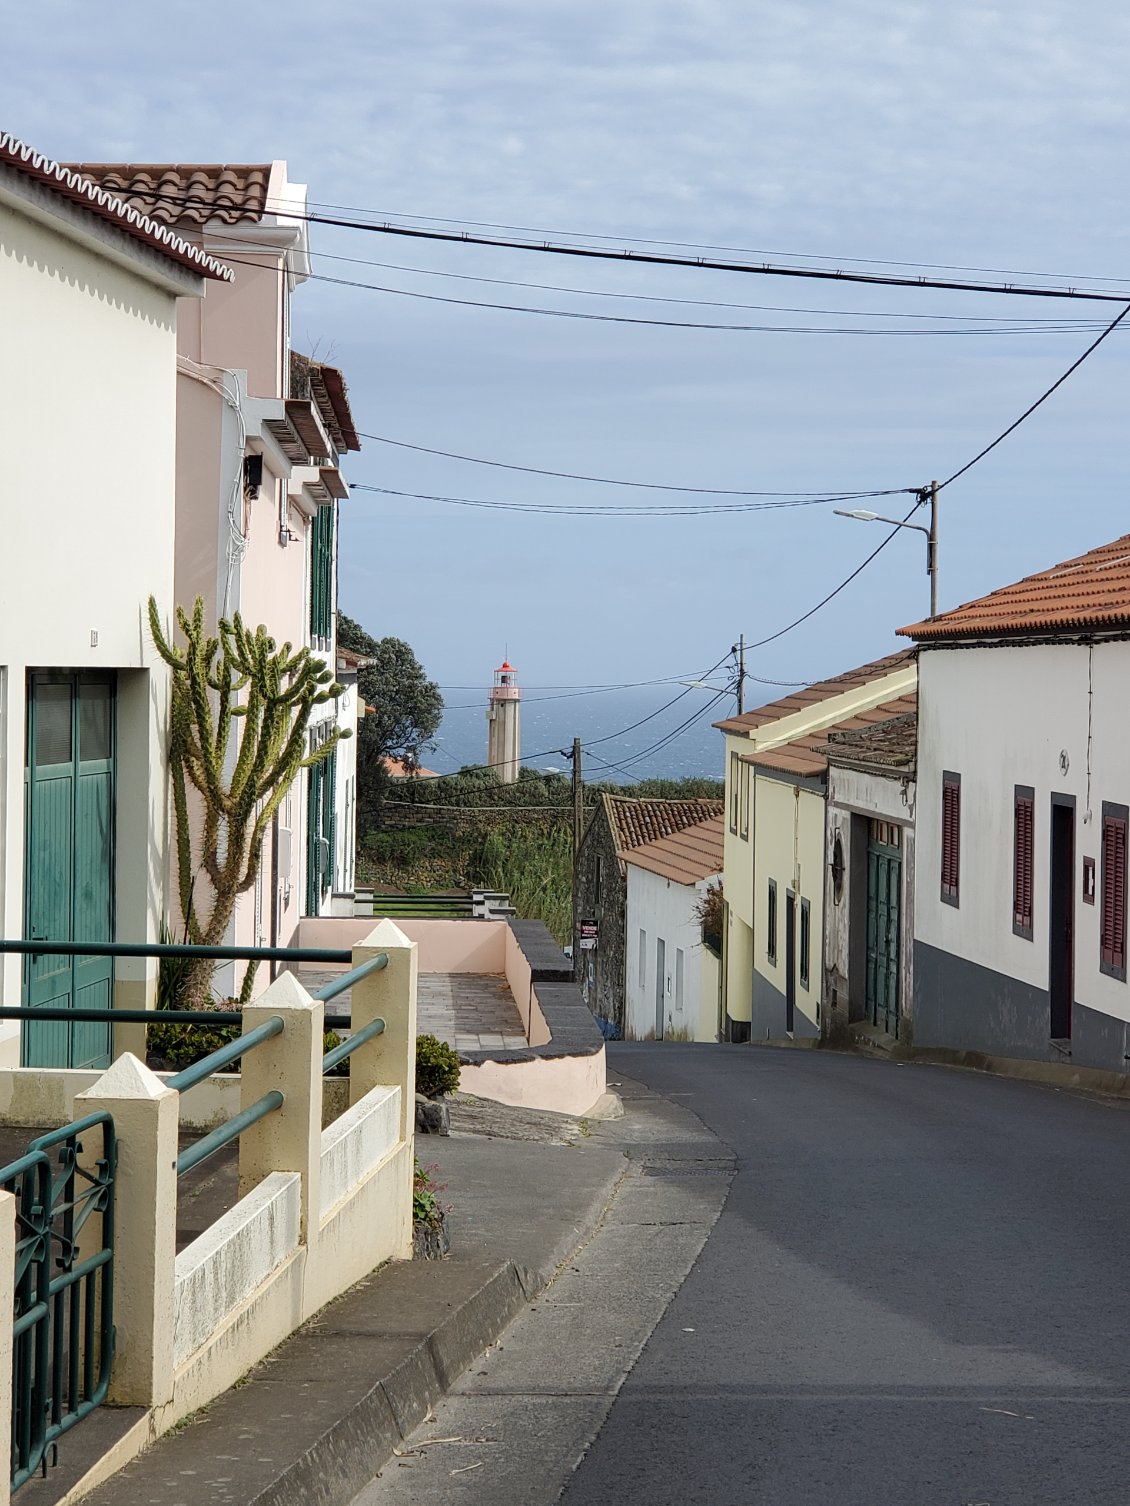 Jour 5 à Ponta Garca. Toutes les maisons ont sur la façade des carreaux de céramique religieux.